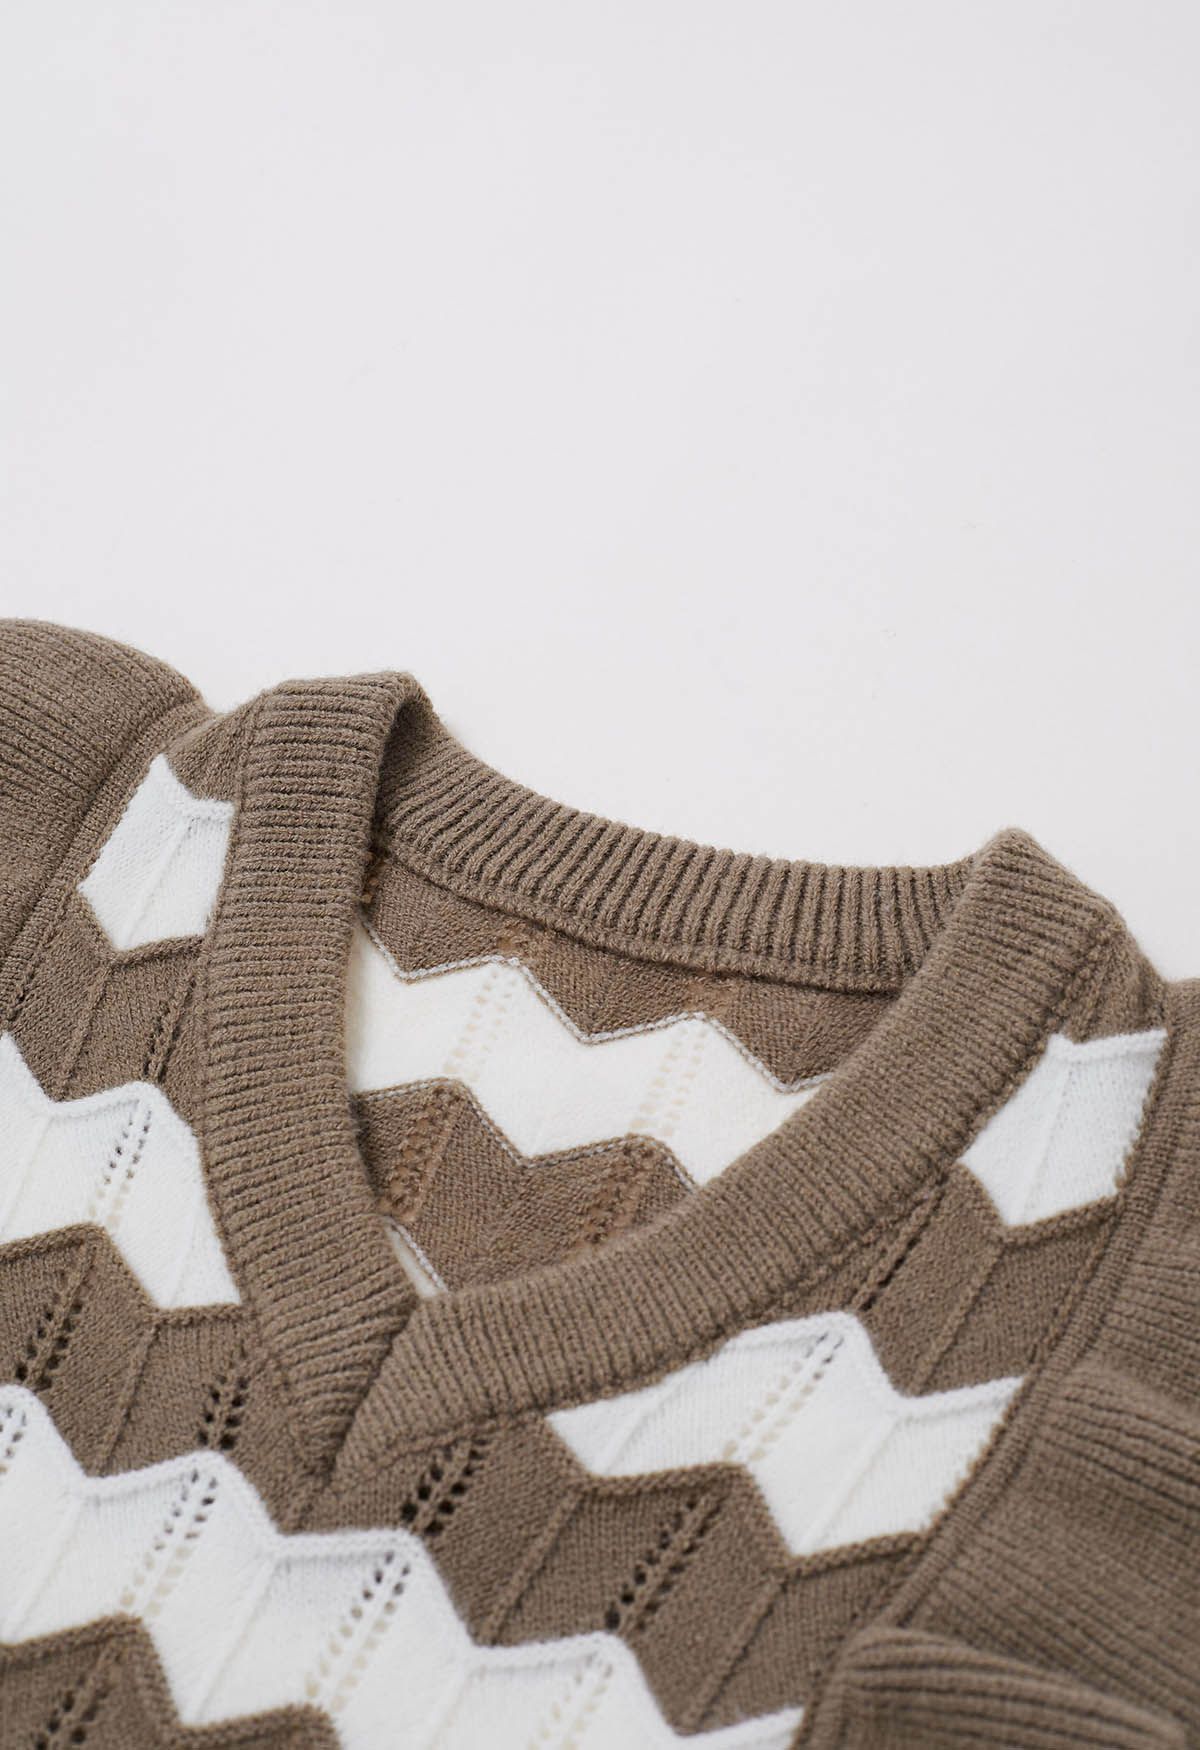 Ruffle Trim Wavy Stripe Knit Sweater in Brown